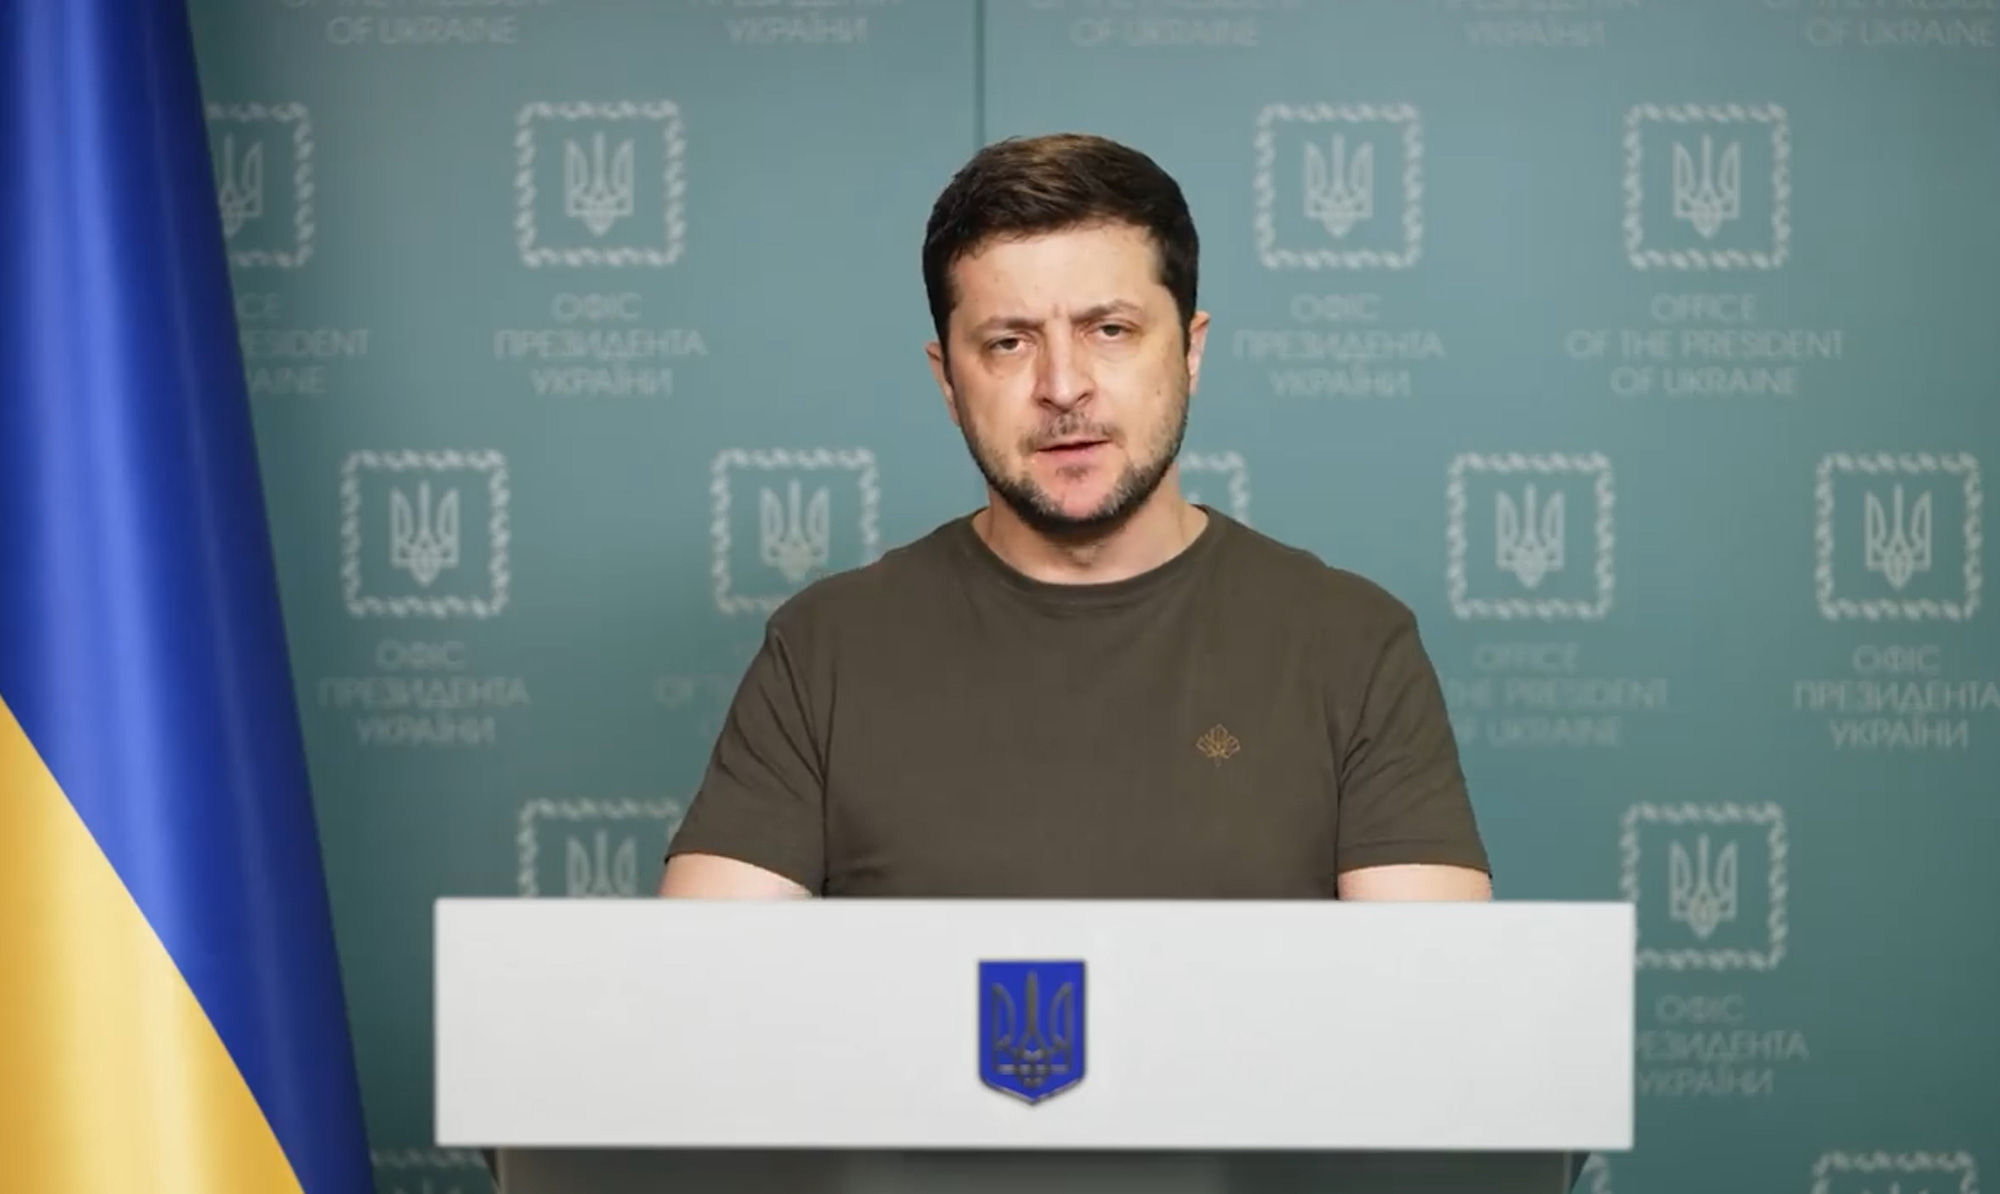 Tổng thống Zelensky: Ukraine sẵn sàng thoả hiệp về quy chế Donbass - Ảnh 1.